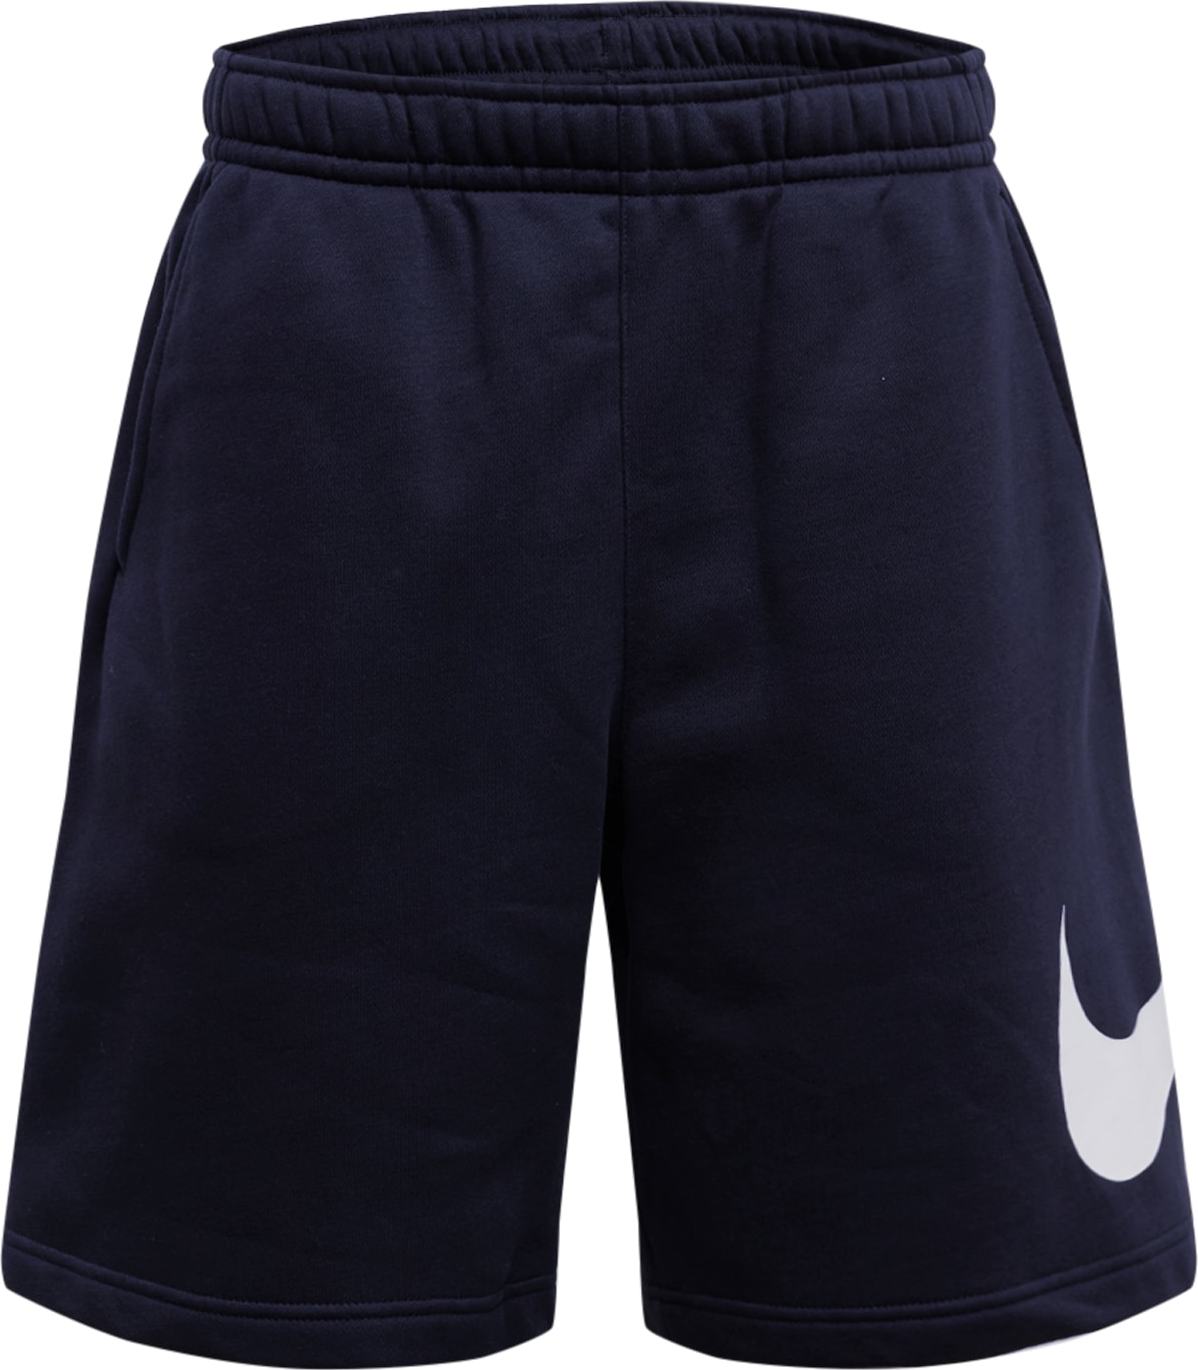 Nike Sportswear Sportovní kalhoty černá / bílá